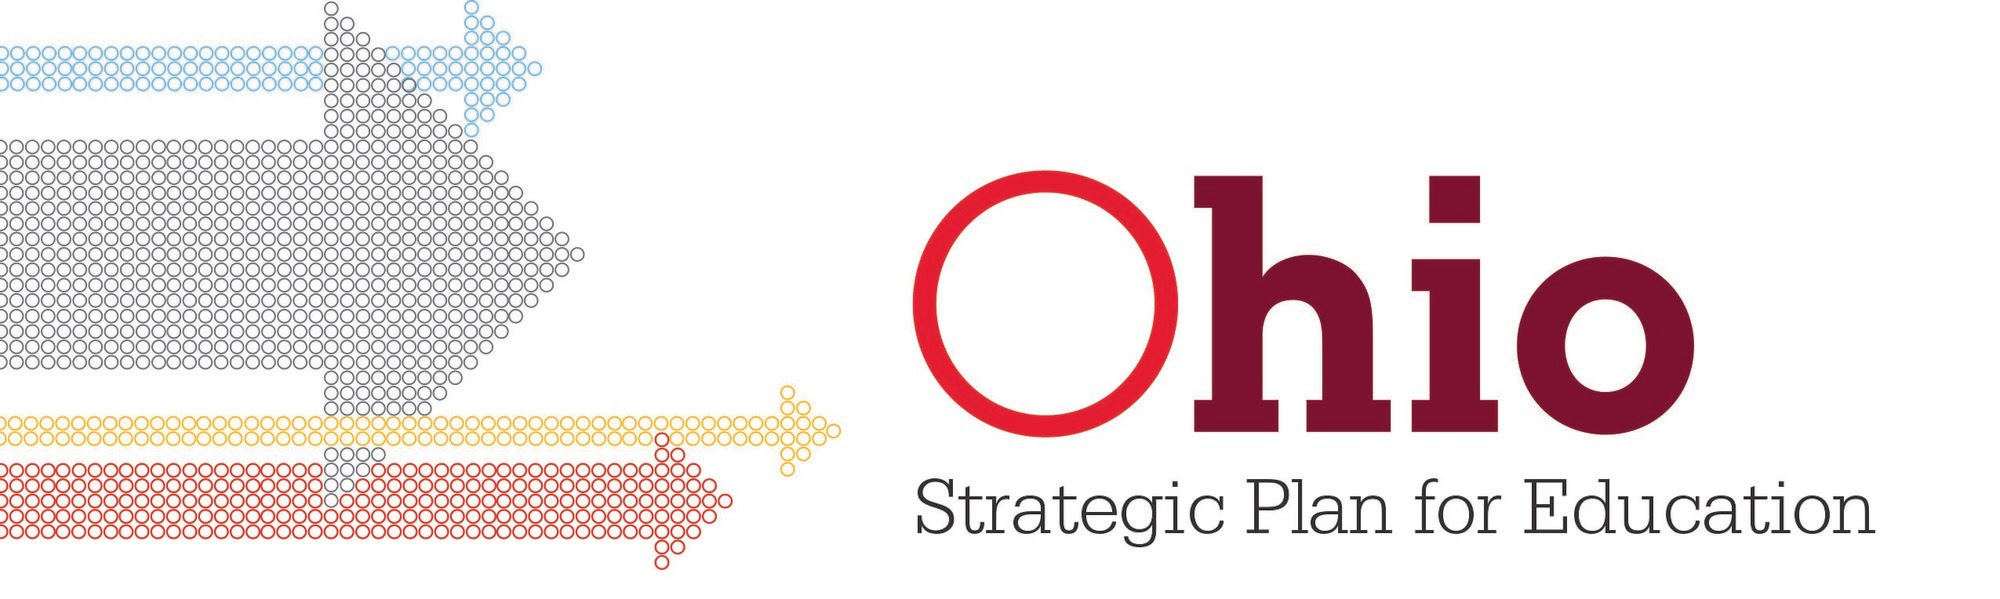 ohio department of education strategic plan